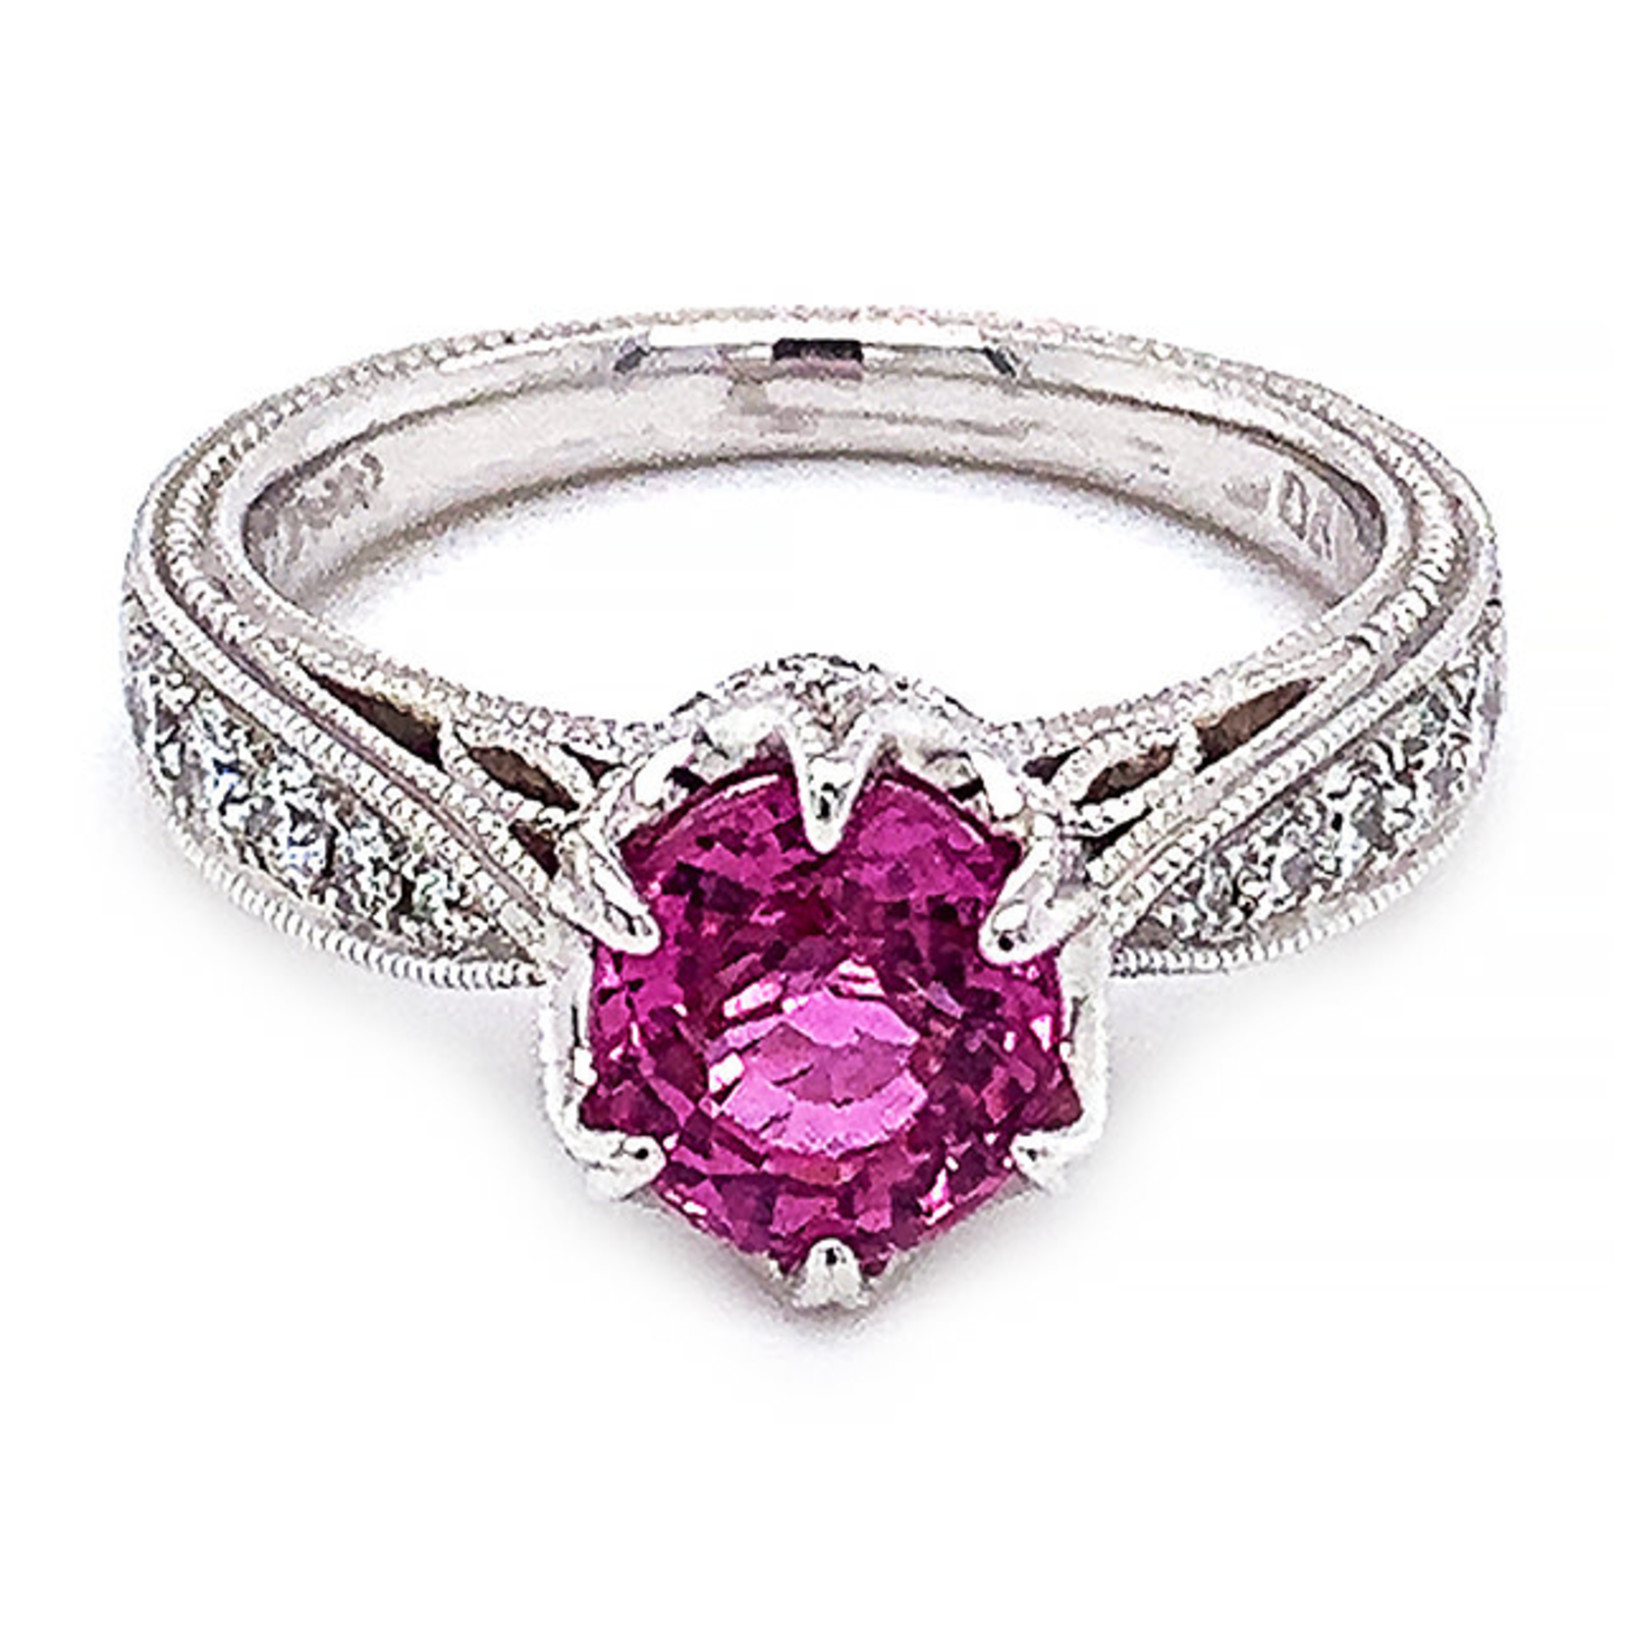 Jewelry By Danuta - Platinum Drawer Pink Sapphire 1.30ct & Diamond .39ctPlatinum Ring